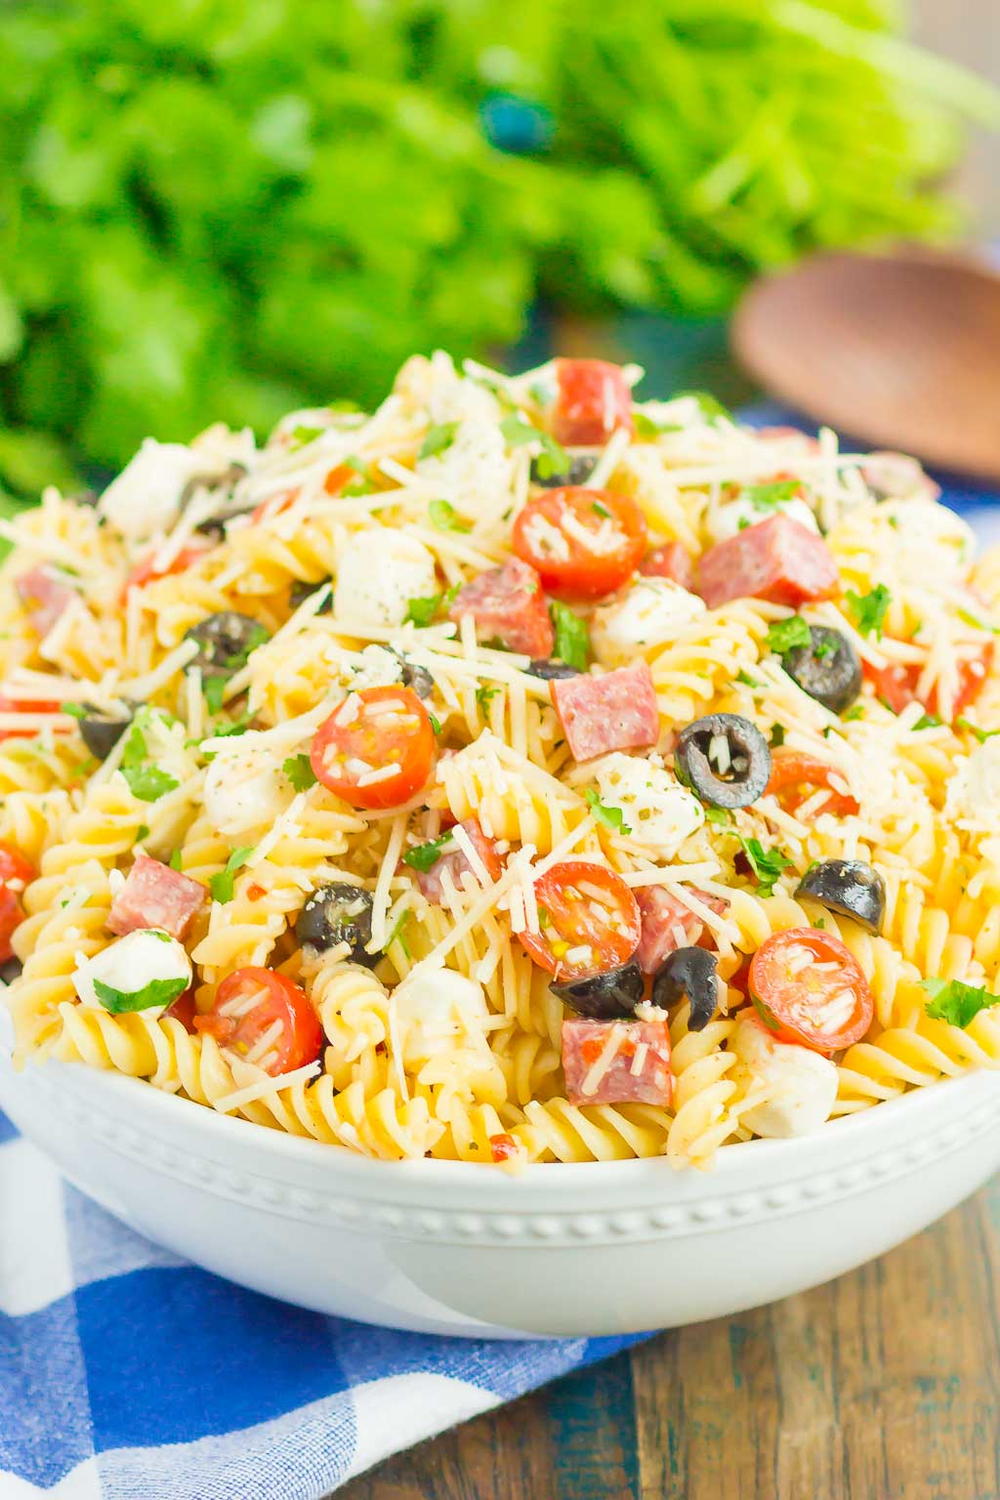 italian pasta salad recipes easy